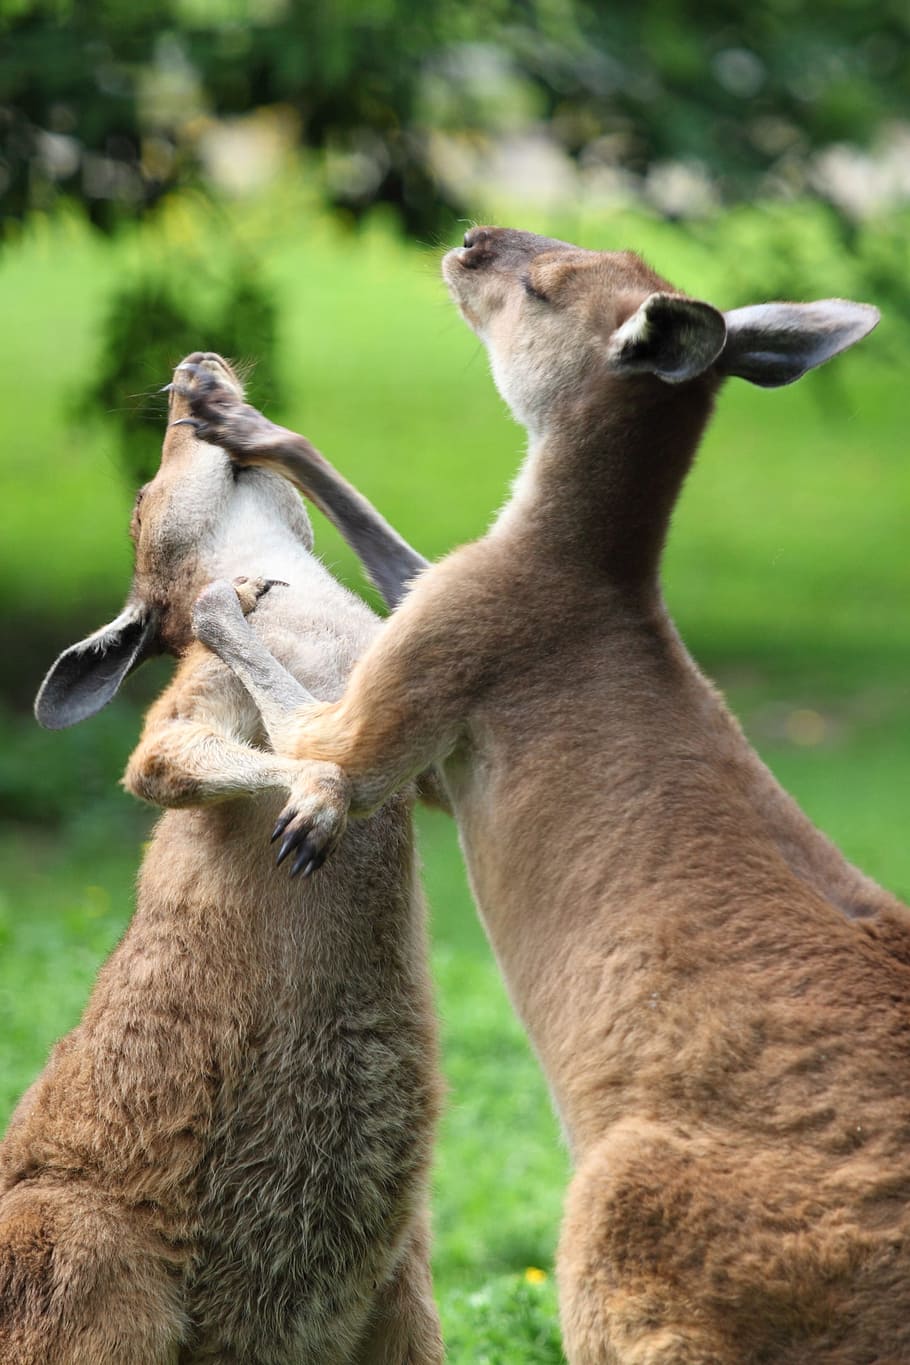 ÙØªÙØ¬Ø© Ø¨Ø­Ø« Ø§ÙØµÙØ± Ø¹Ù âªBoxing + kangaroo + forestâ¬â